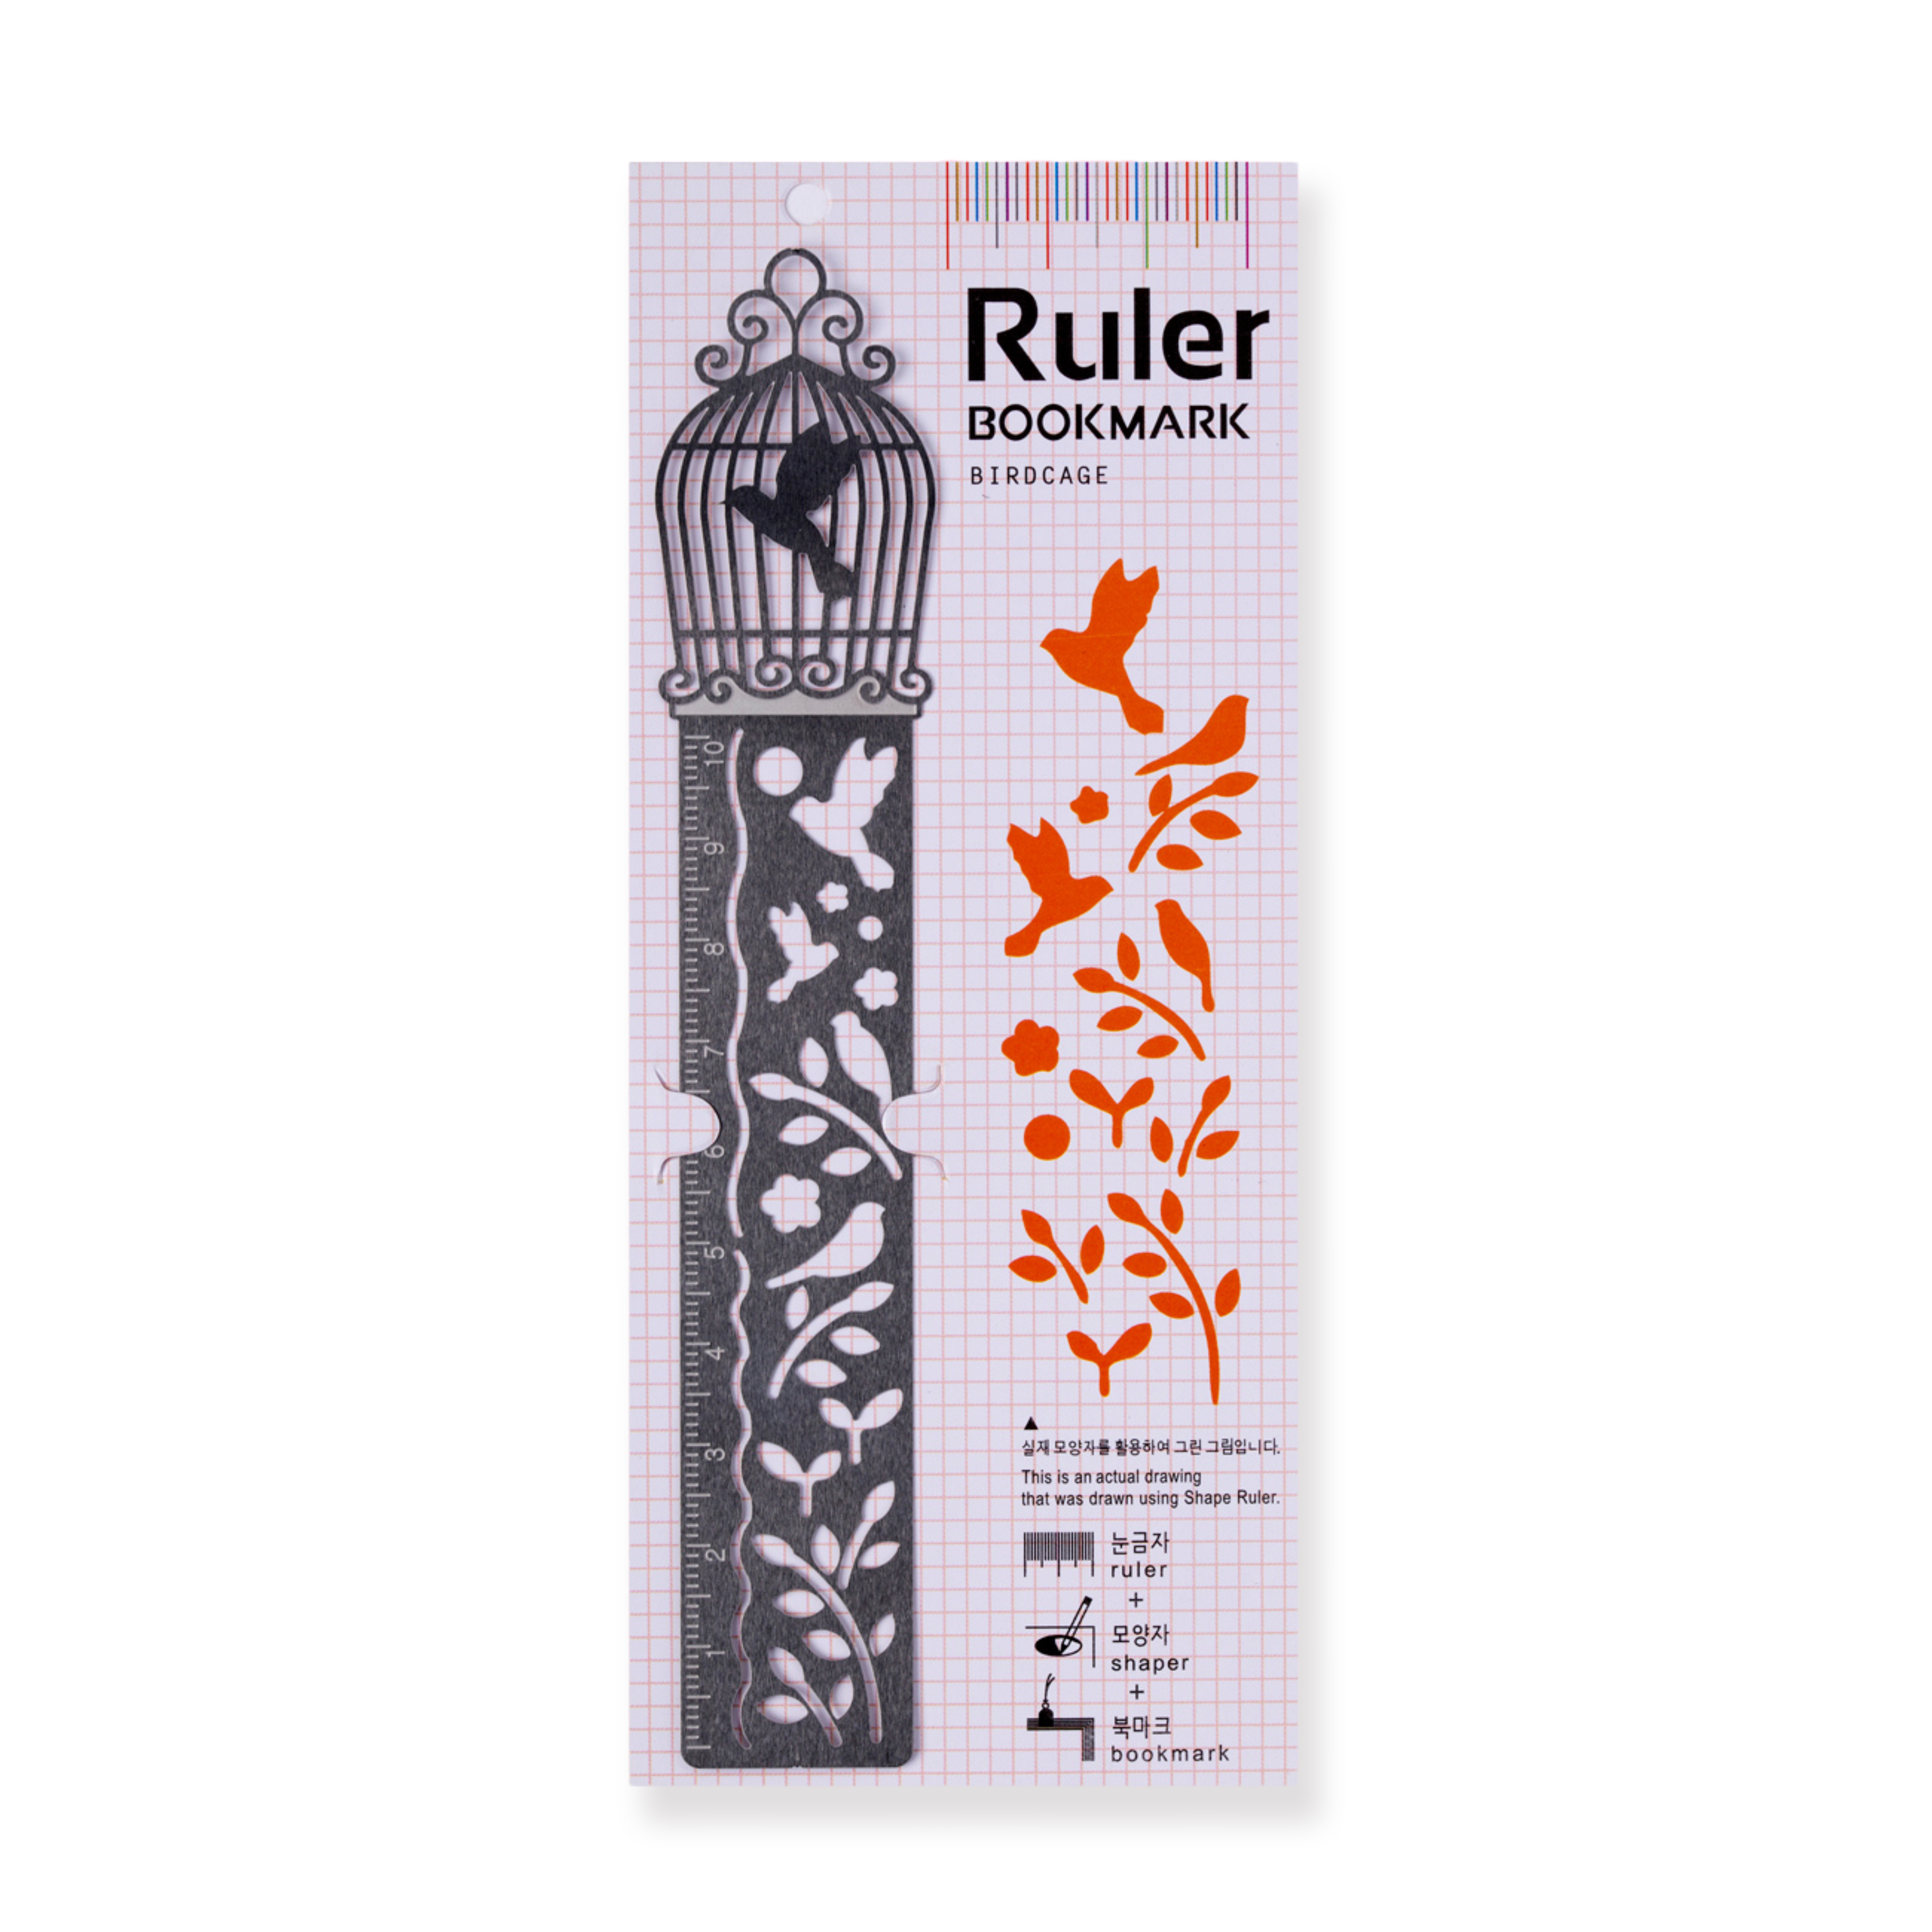 Ruler Bookmark - Birdcage